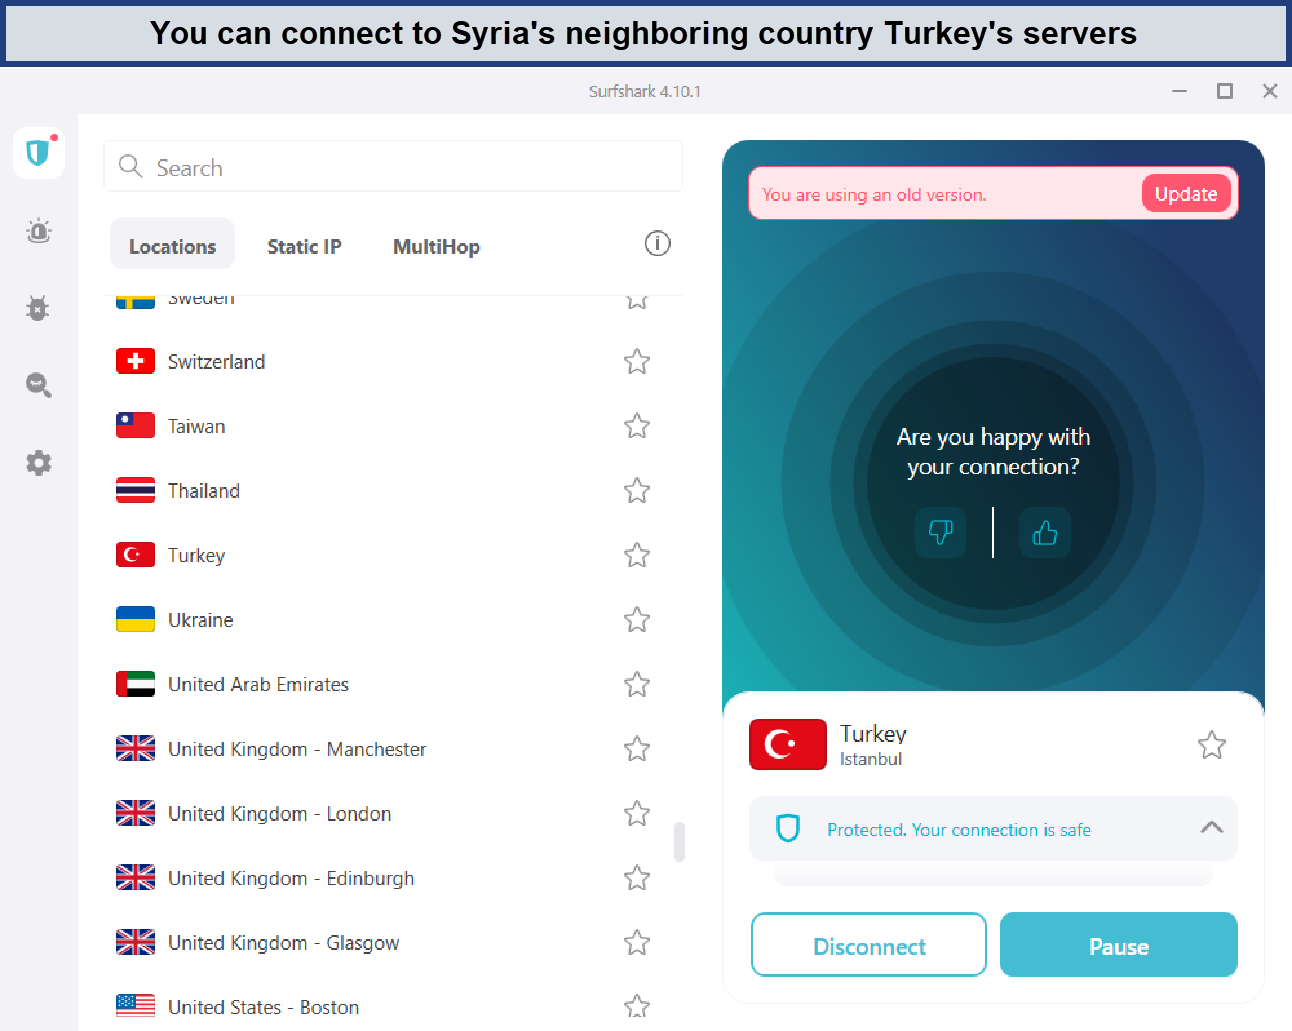 surfshark-turkey-servers-bvco-For Australian Users